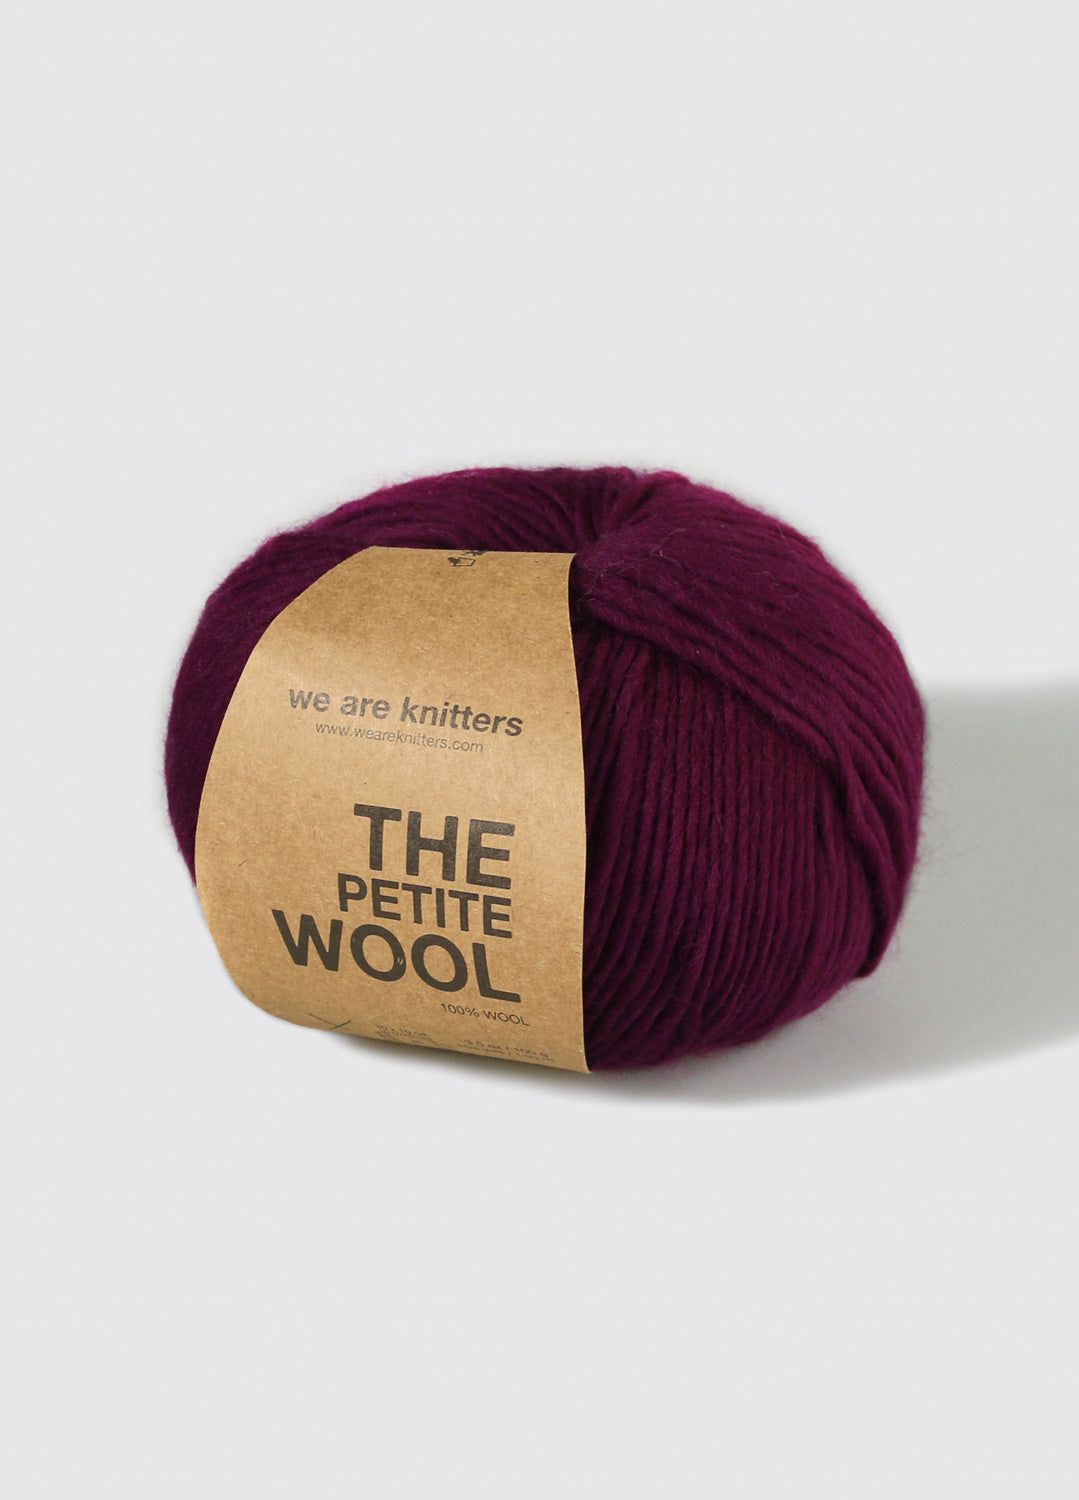 8 Balls Wool Yarn, Wool for Knitting, Crochet,100% Wool, Lithuanian Wool  Yarn 